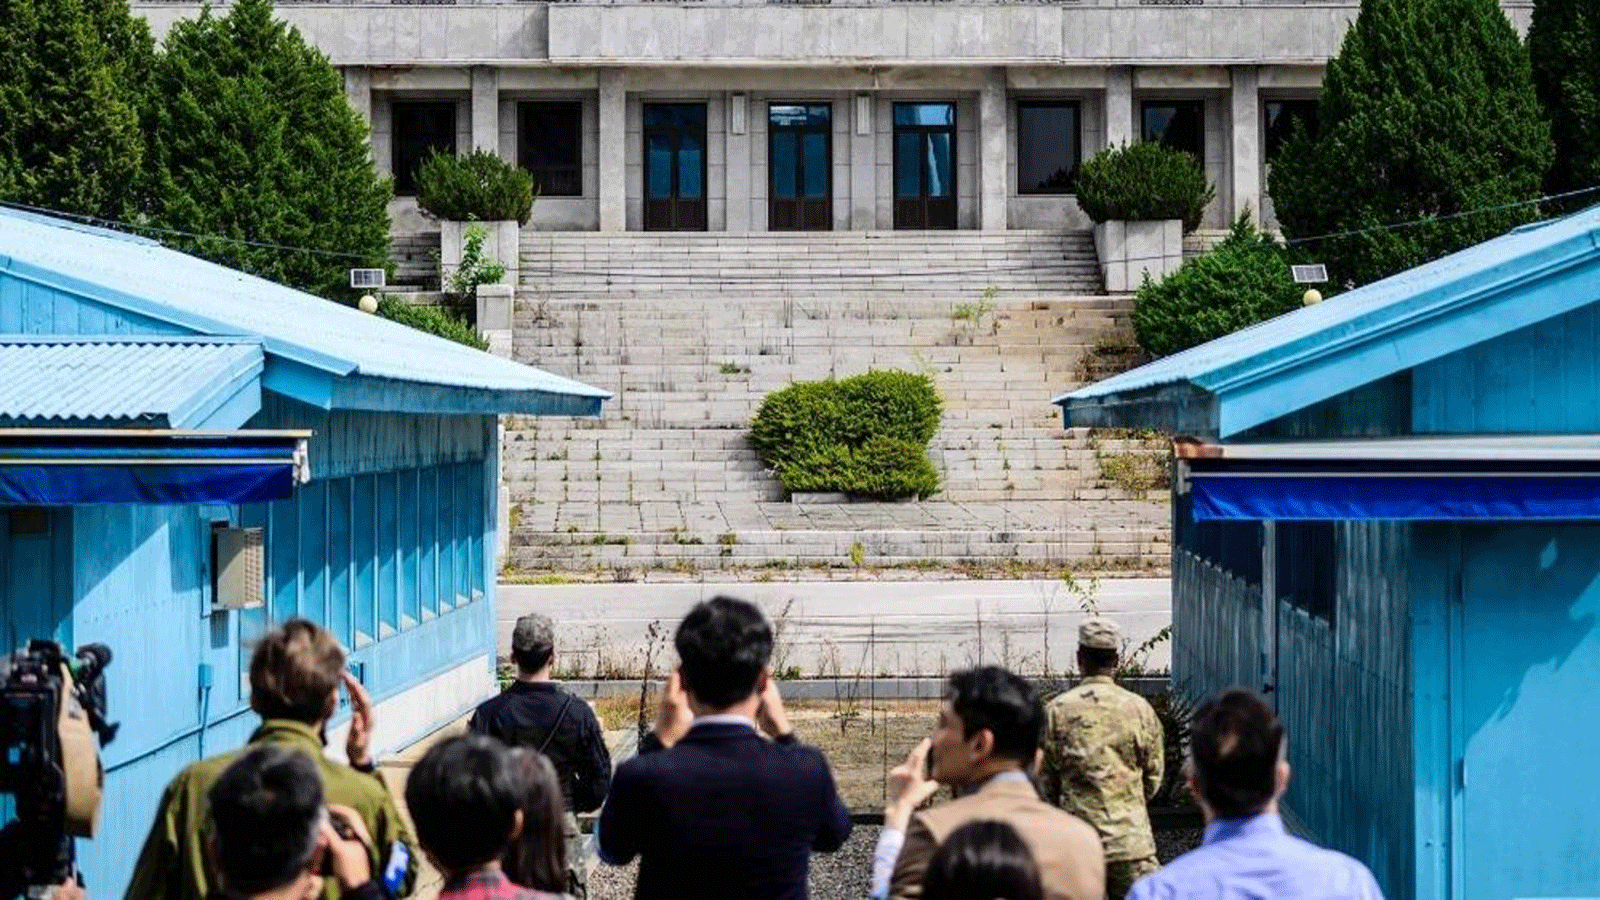 أعضاء وسائل الإعلام (في المقدمة) يلتقطون صورًا خلف جندي من قيادة الأمم المتحدة (مركز R) وجندي كوري جنوبي (الوسط L) أثناء وقوفهم في حراسة أمام قاعة بانمون في كوريا الشمالية (الجزء الخلفي C) وخط الترسيم العسكري الفاصل بين كوريا الشمالية وكوريا الجنوبية، في المنطقة الأمنية المشتركة (JSA) للمنطقة المنزوعة السلاح (DMZ) في قرية الهدنة، بانمونجوم.